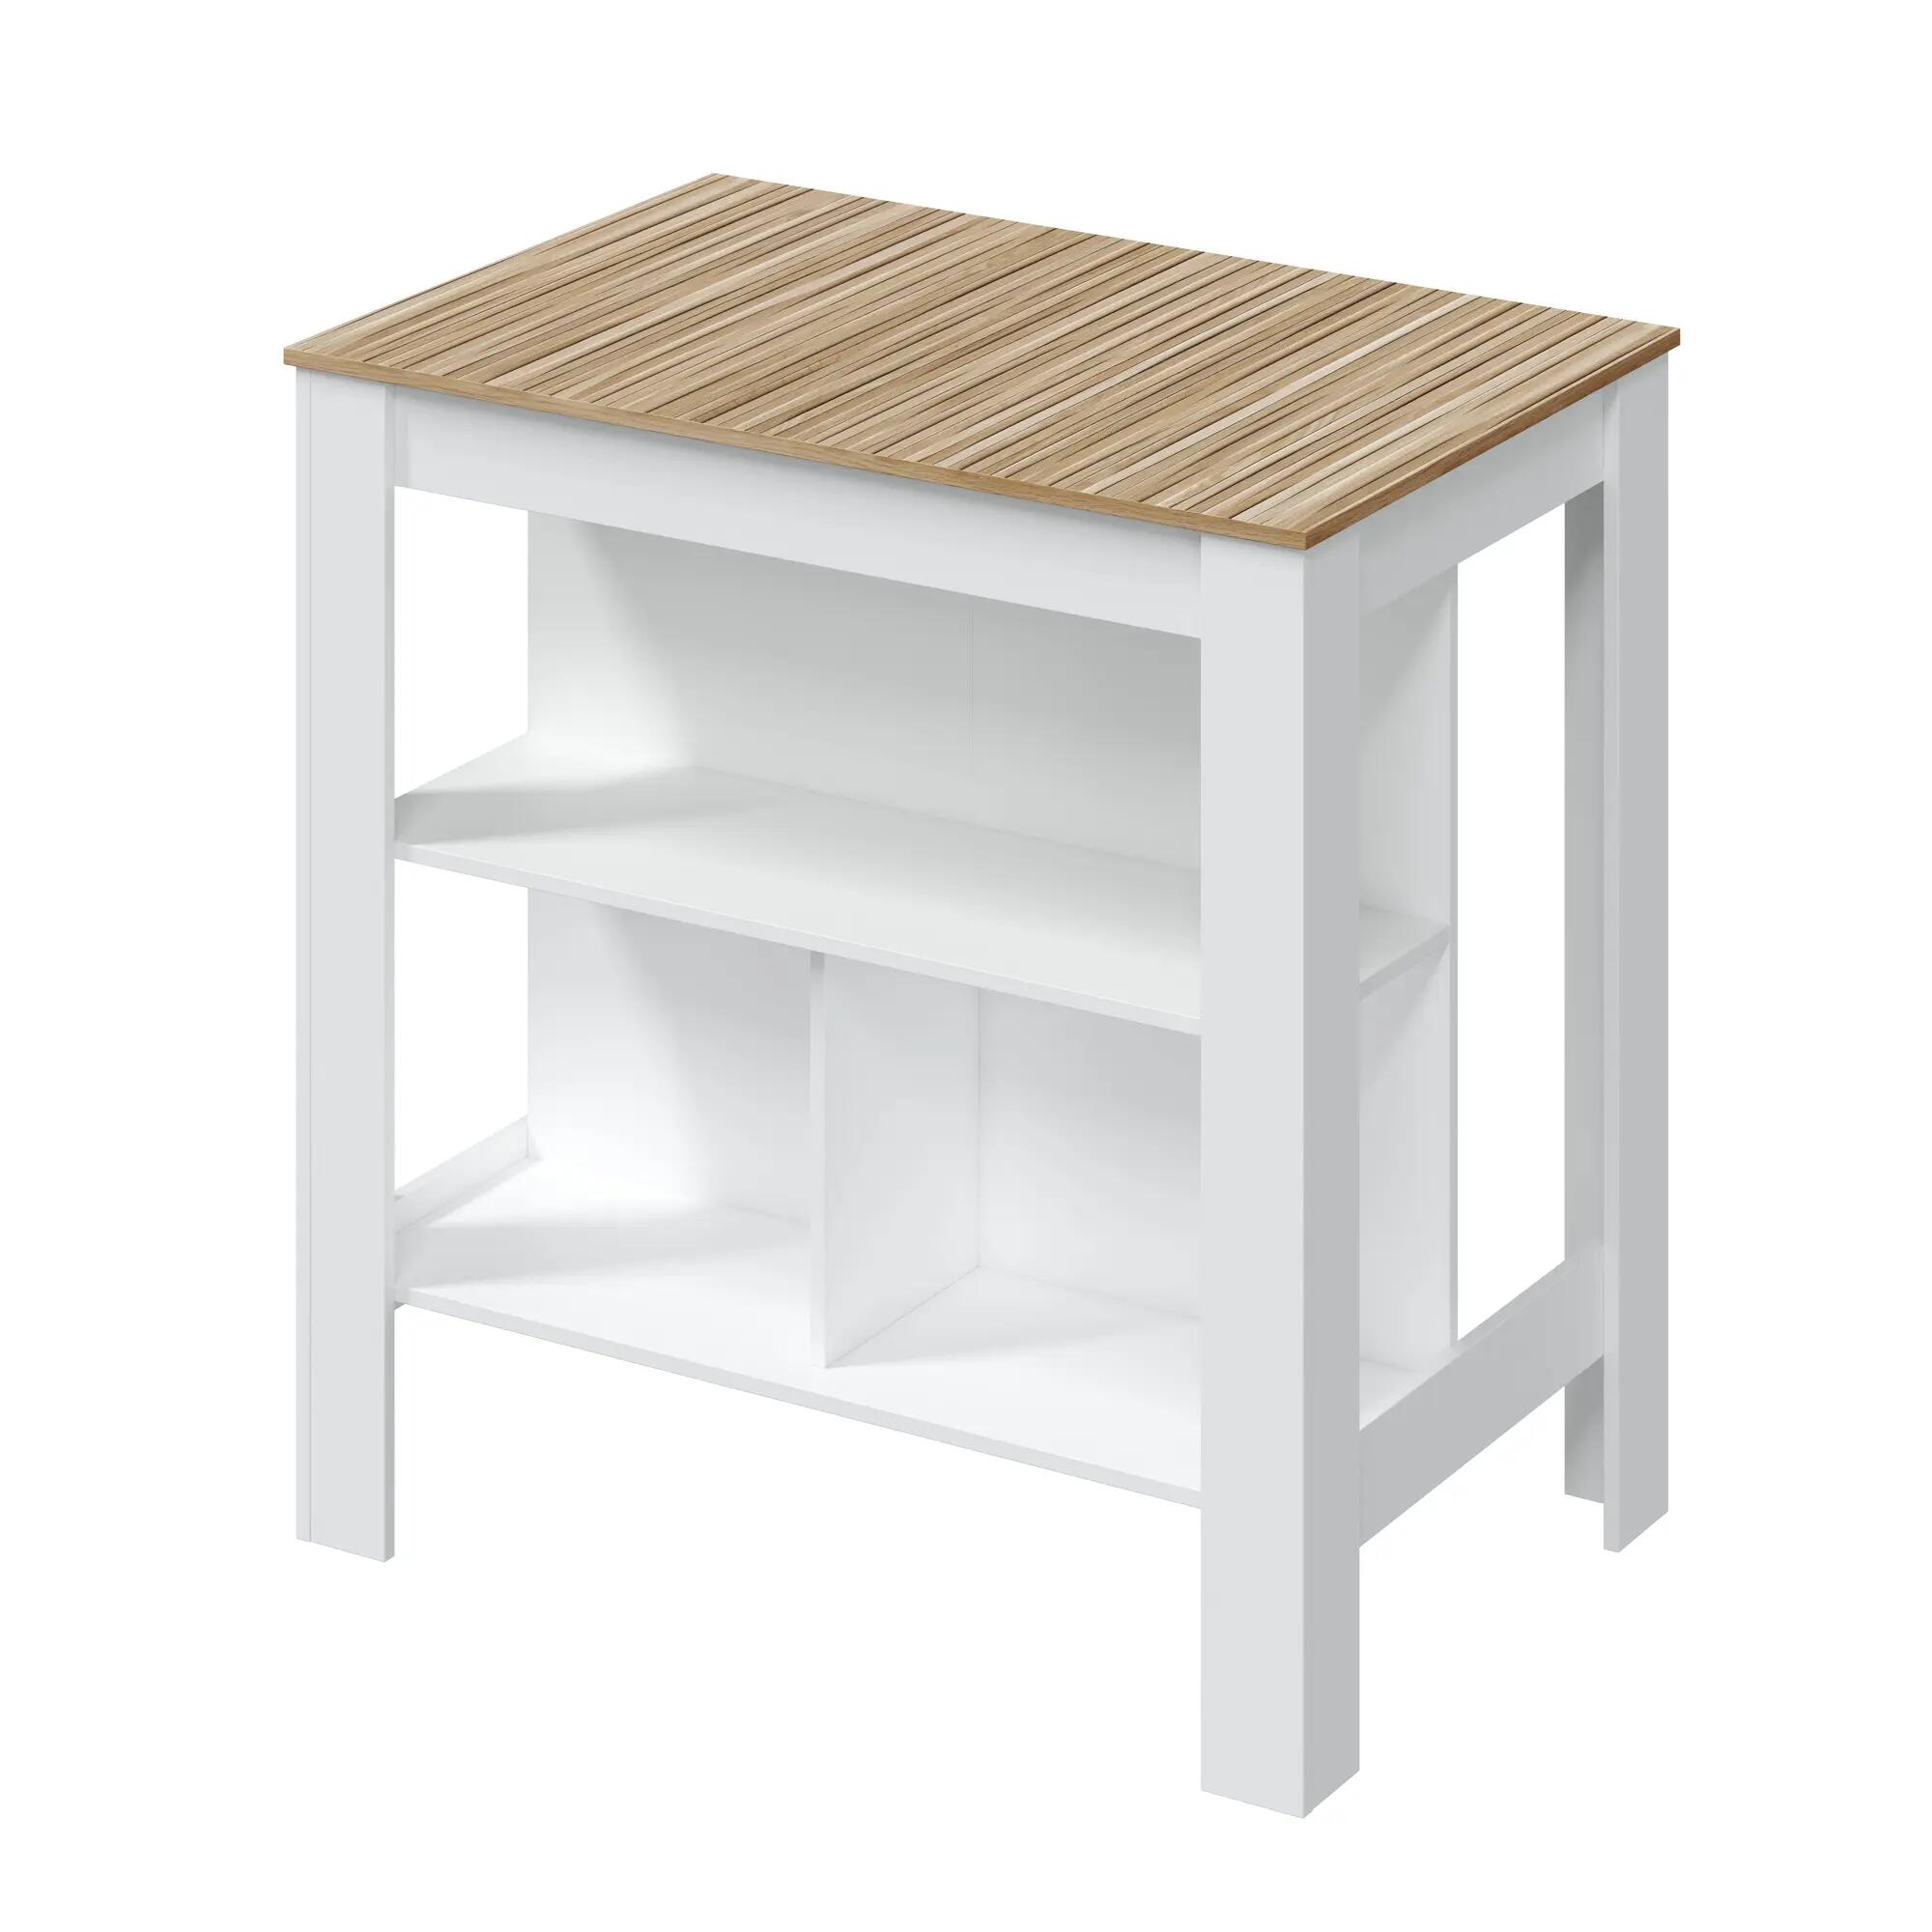 Mesa de cocina fija alta kira con estantería 105x103x67 cm blanco/madera natural